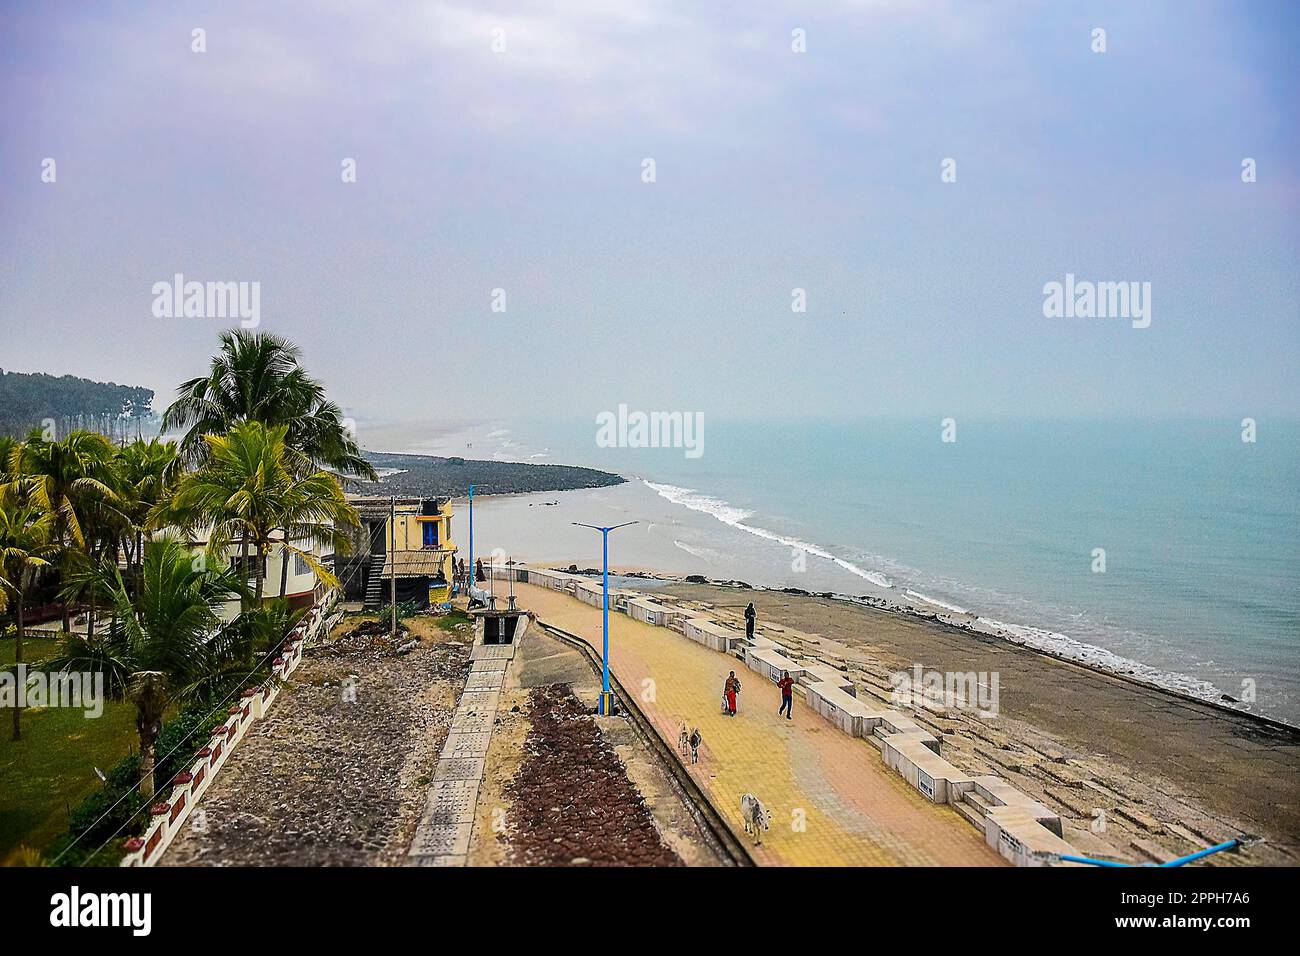 Leute reisen für eine Tour zur Küste und zu den Stränden Digha, einer Stadt an der Bucht von Bengal, sehr nahe zu Odisha, Staat, Indien, sehr beliebtes Strandresort in Ostindien. Mandarmoni, Tajpur, Talsari, fast die Strände von Digha. Asien, Indien im Jahr 2019. Stockfoto